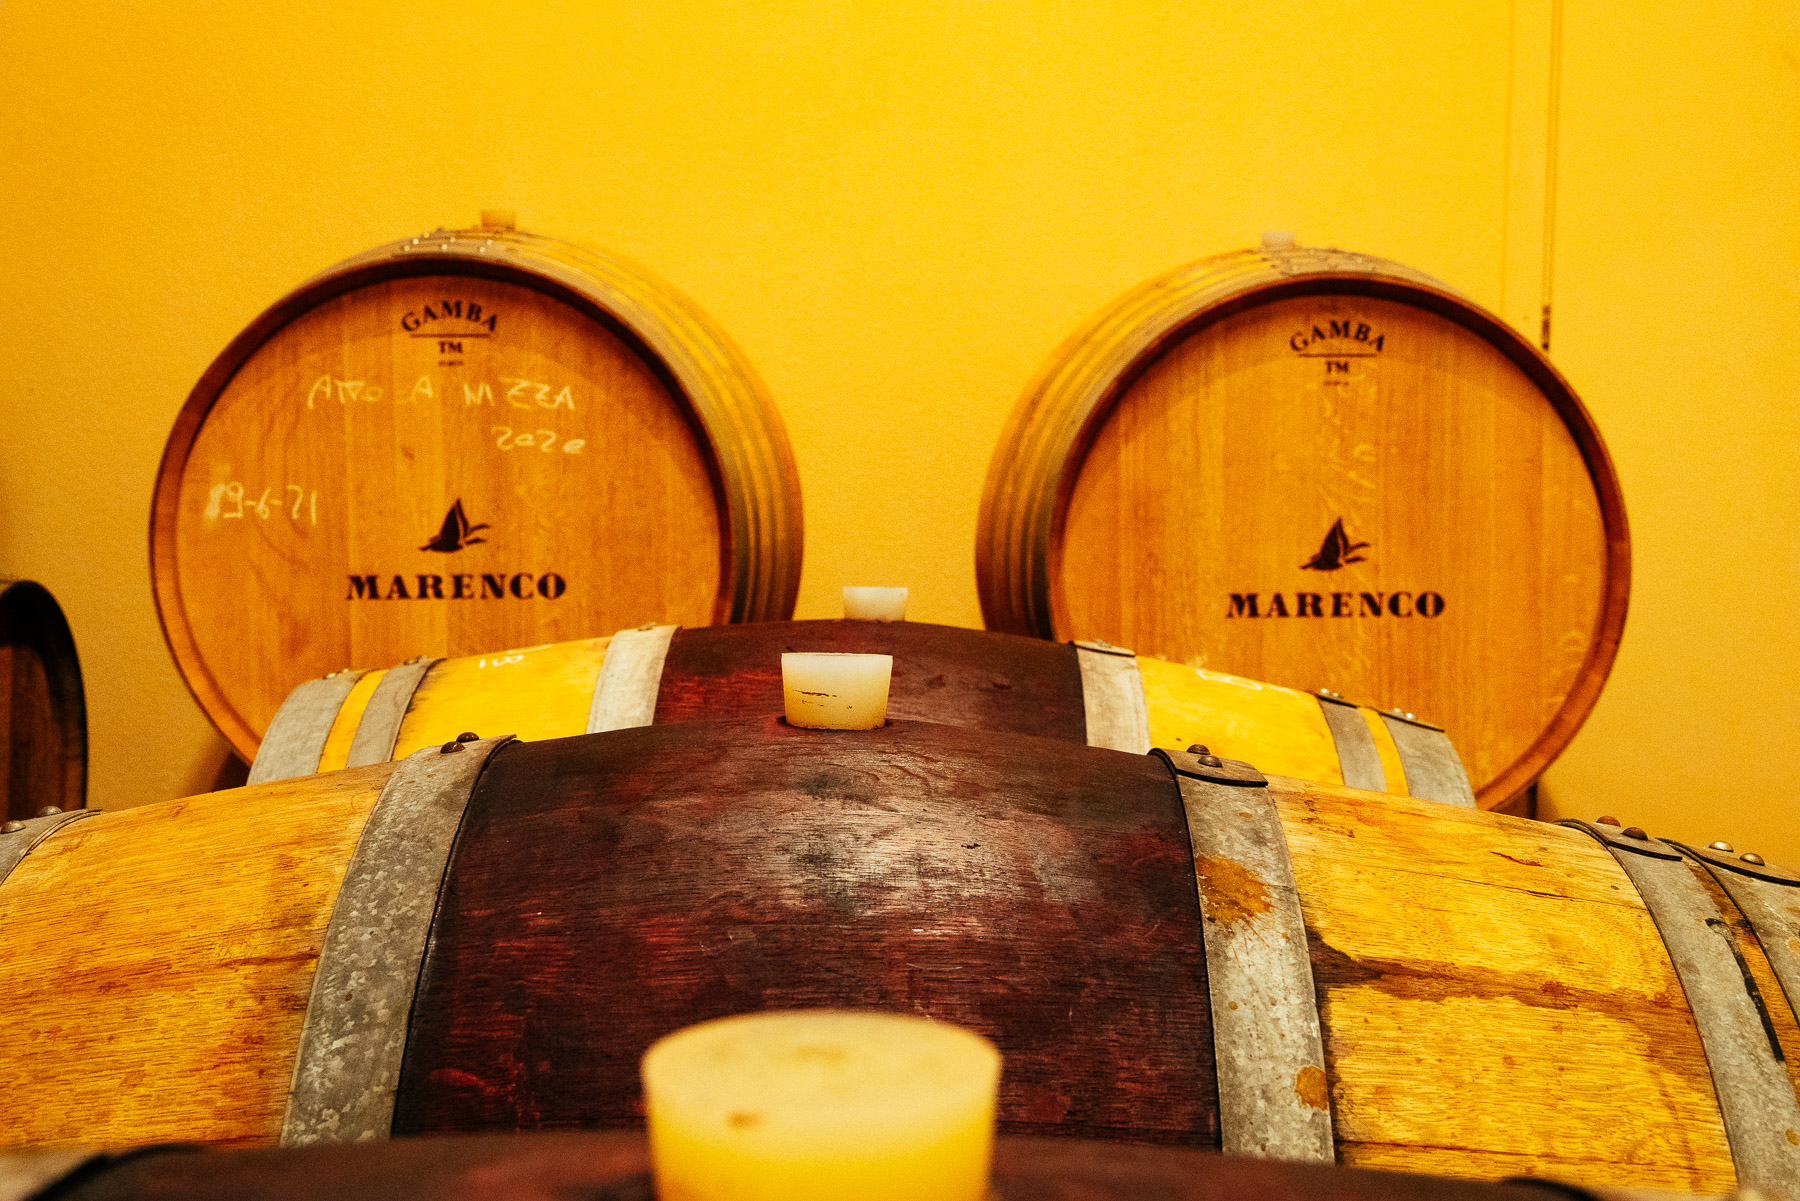 Marenco sin historie går tilbake til 1925 med Michele Marenco's drøm. Han ønsket å lage vin fra vingården sin i hjertet av Bagnario Valley, Strevi, Piemonte.
I dag strekker Marencos eiendom seg til det opprinnelige området Strevi, dedikert til Moscato og Brachetto, samt området Nizza, landsbyene Fontanile og Castel Boglione, der Barbera har blitt dyrket i århundrer.
